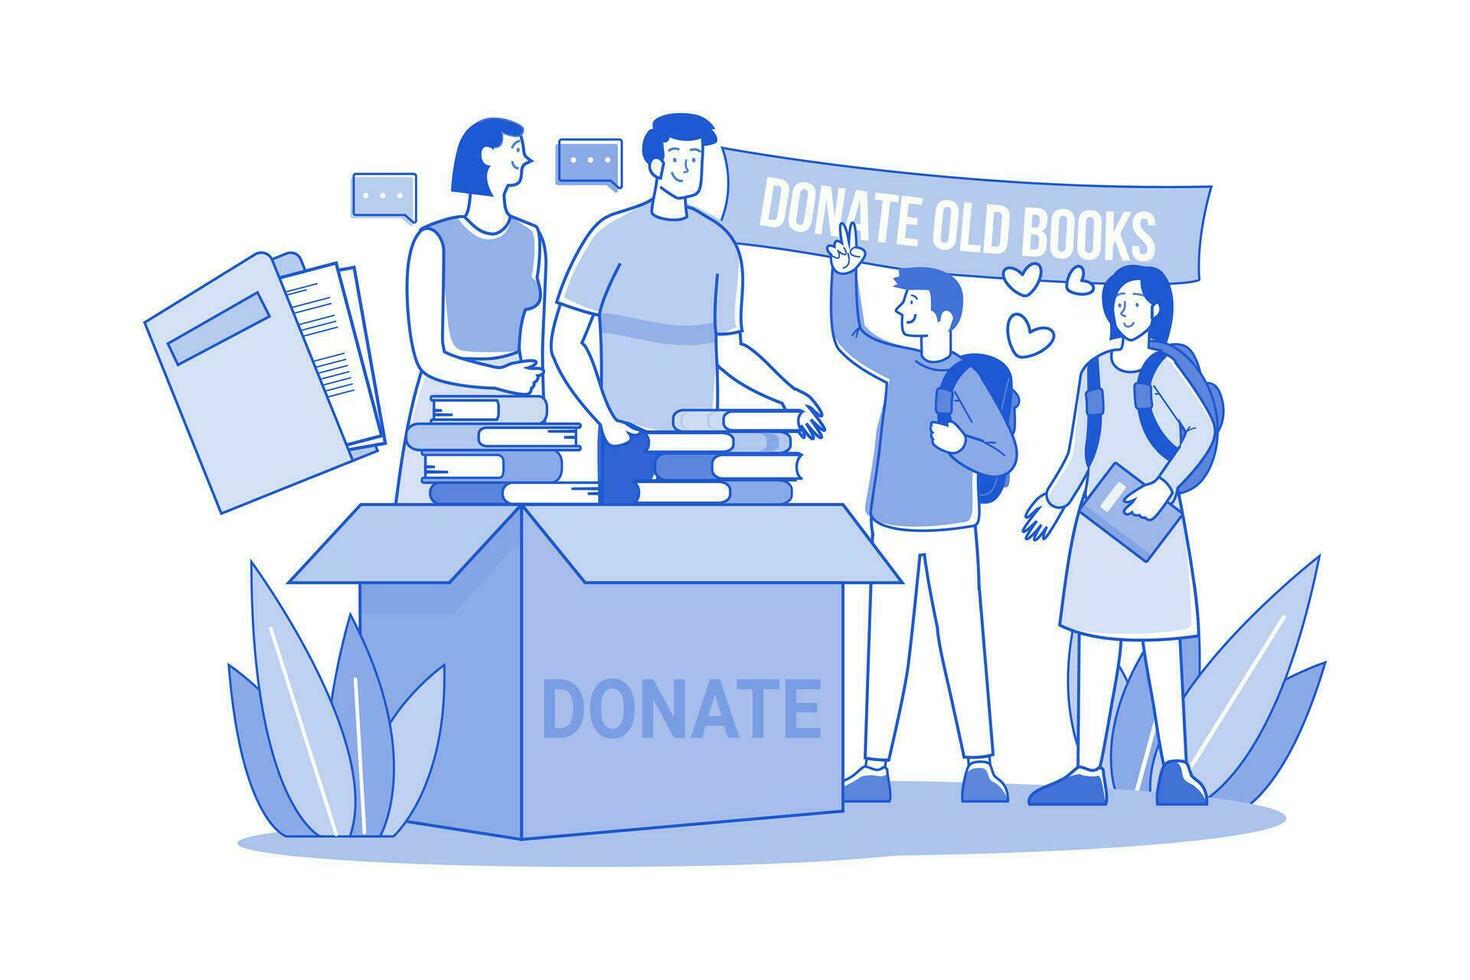 grupo de voluntarios dona libros y periódicos viejos a estudiantes pobres vector